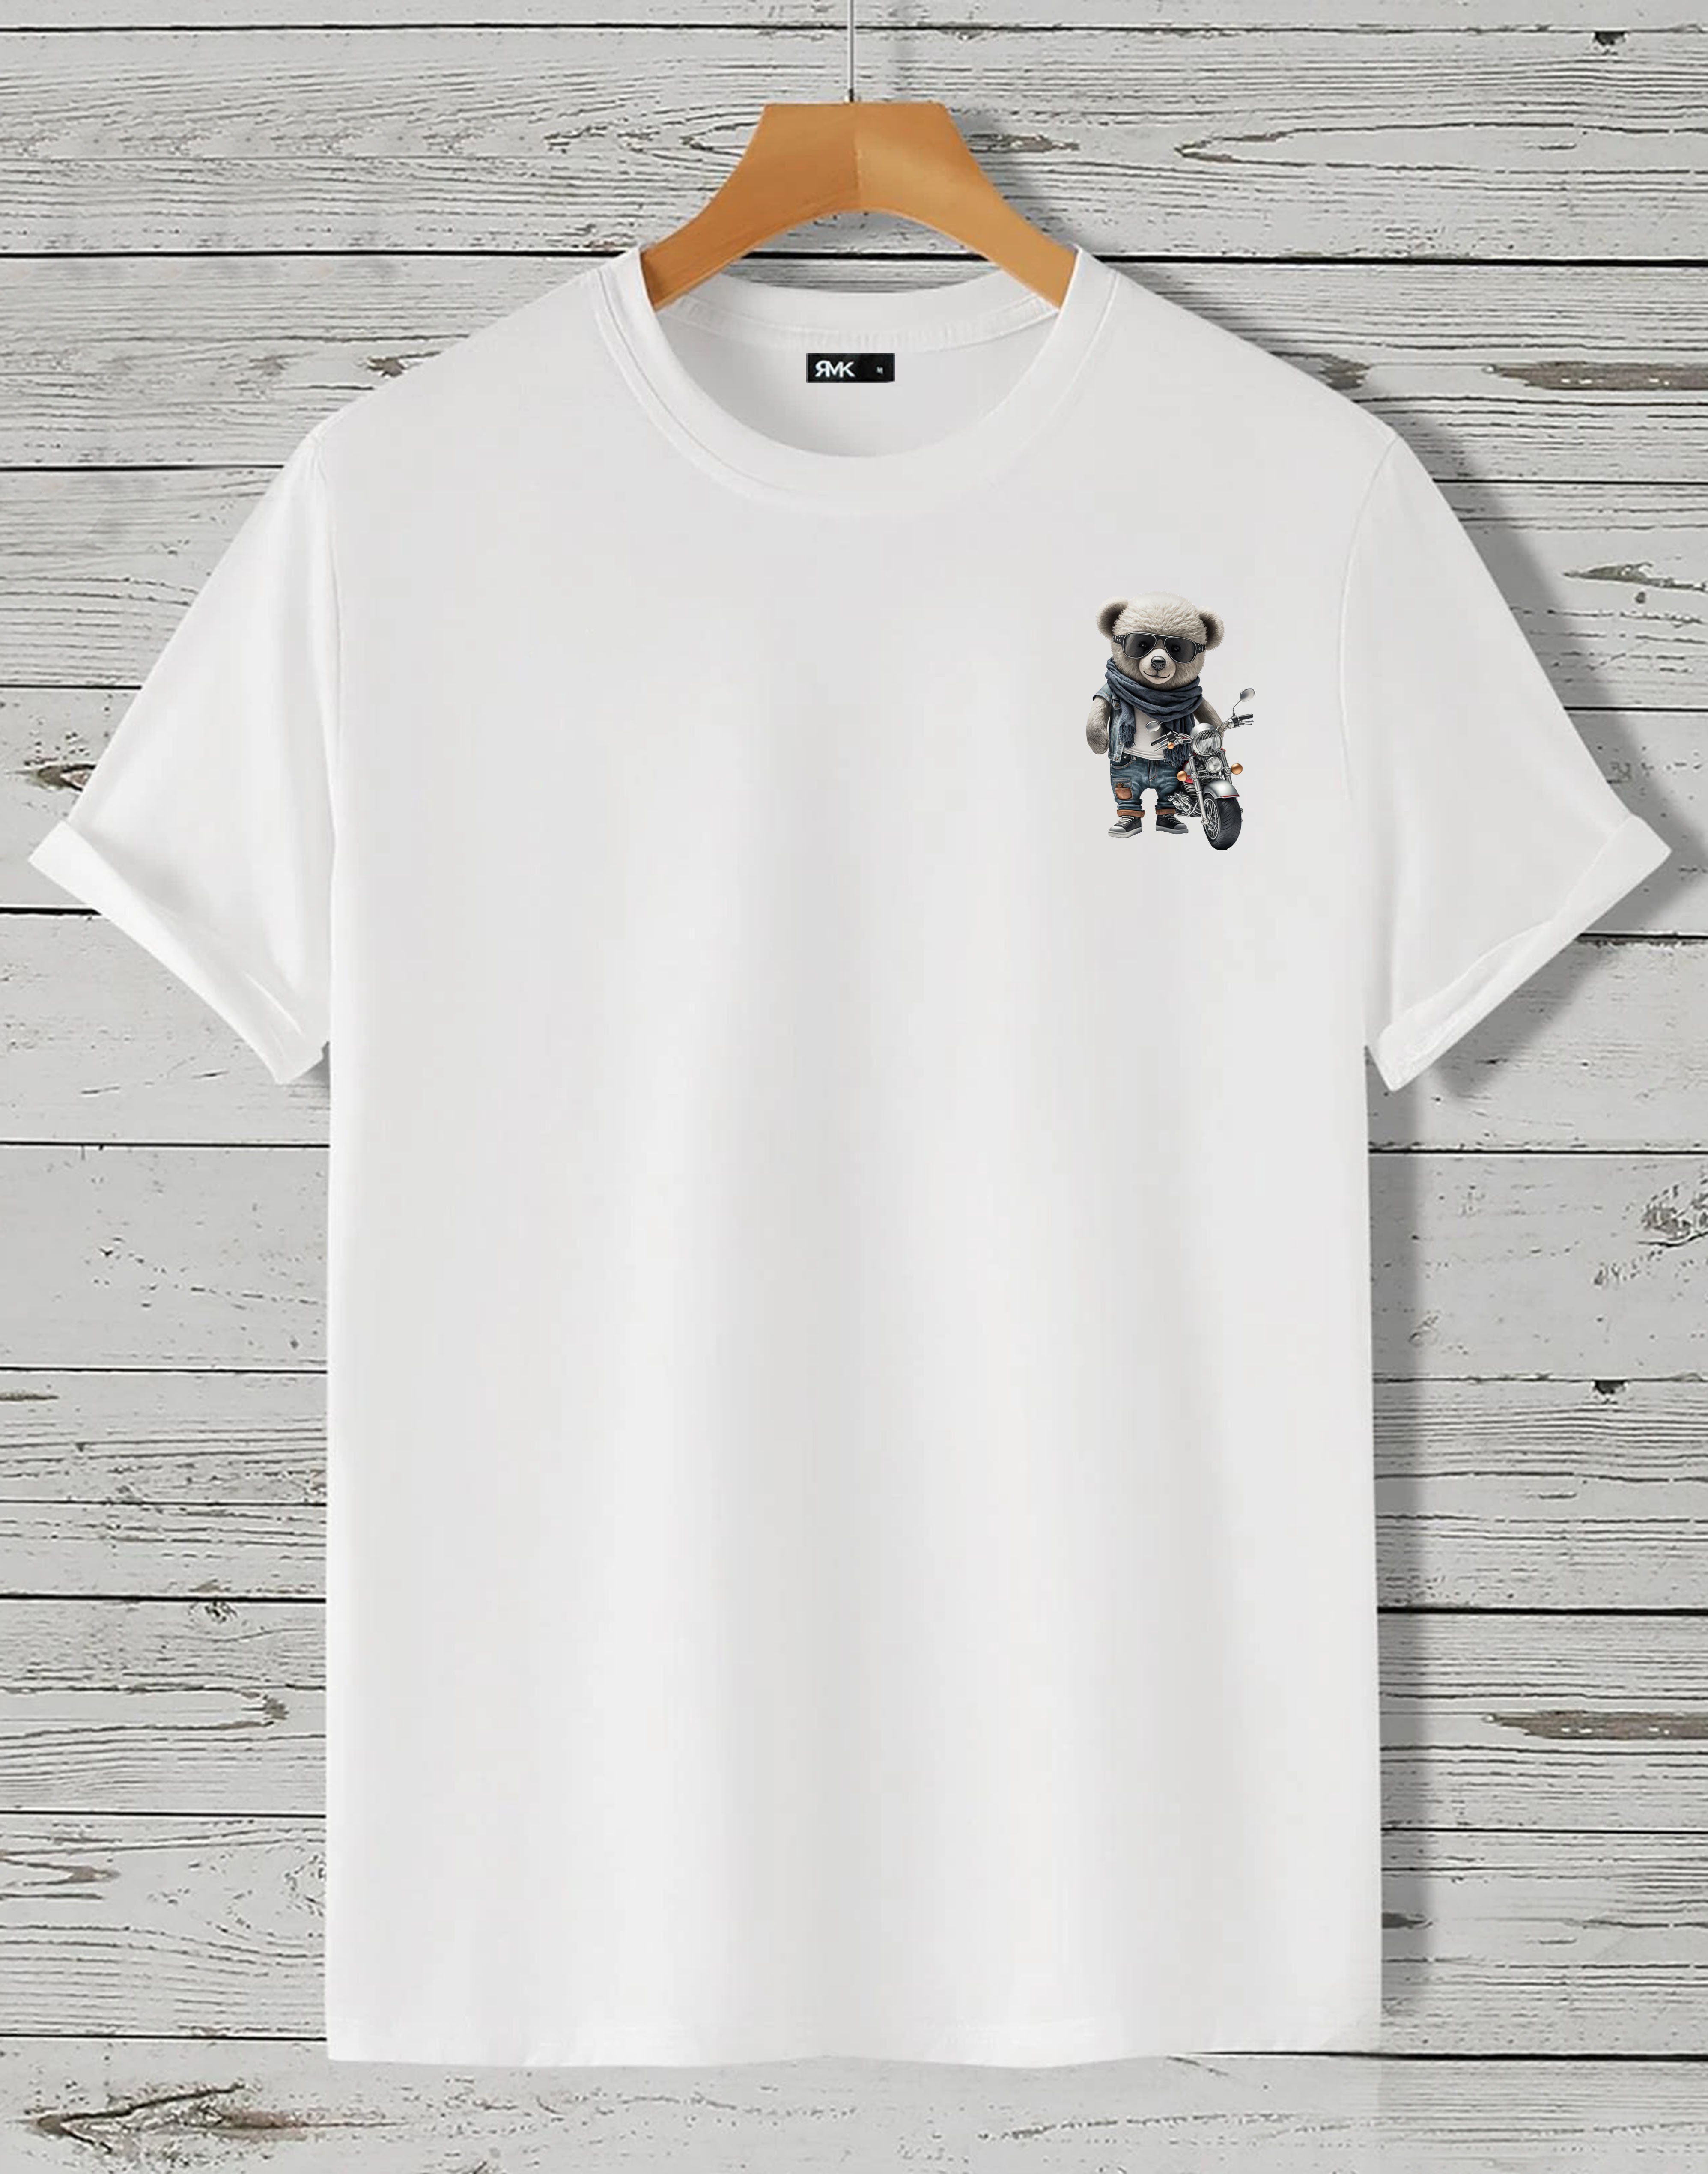 RMK T-Shirt Herren T-Shirt Rundhals mit Teddybär Motorrad Weiß (klein)